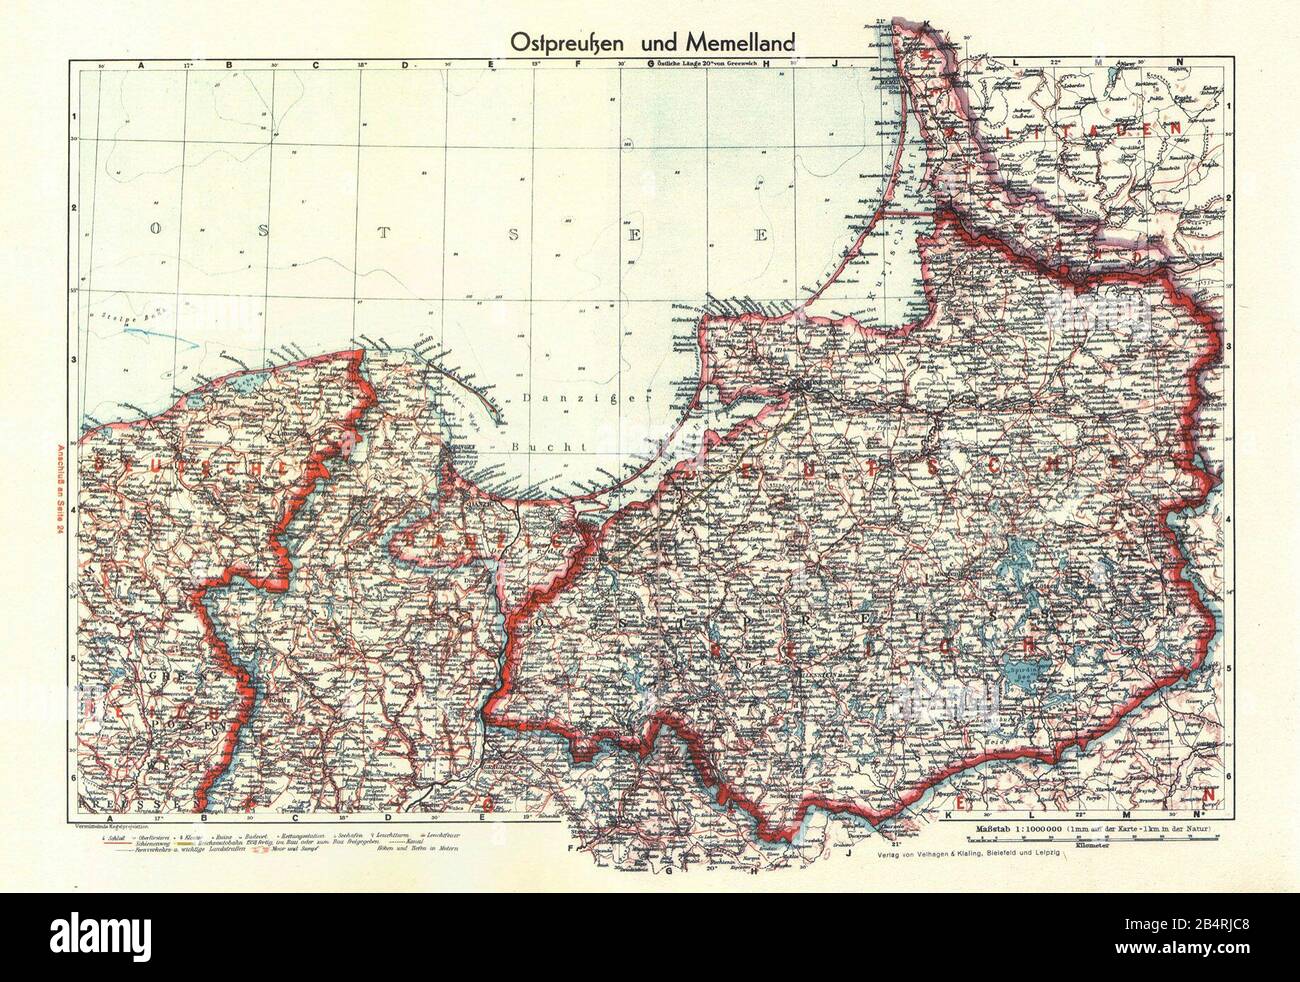 Karte von Polen von 1939, die den nördlichen Teil des Landes, einschließlich Danzig/Gdansk/ Stockfoto